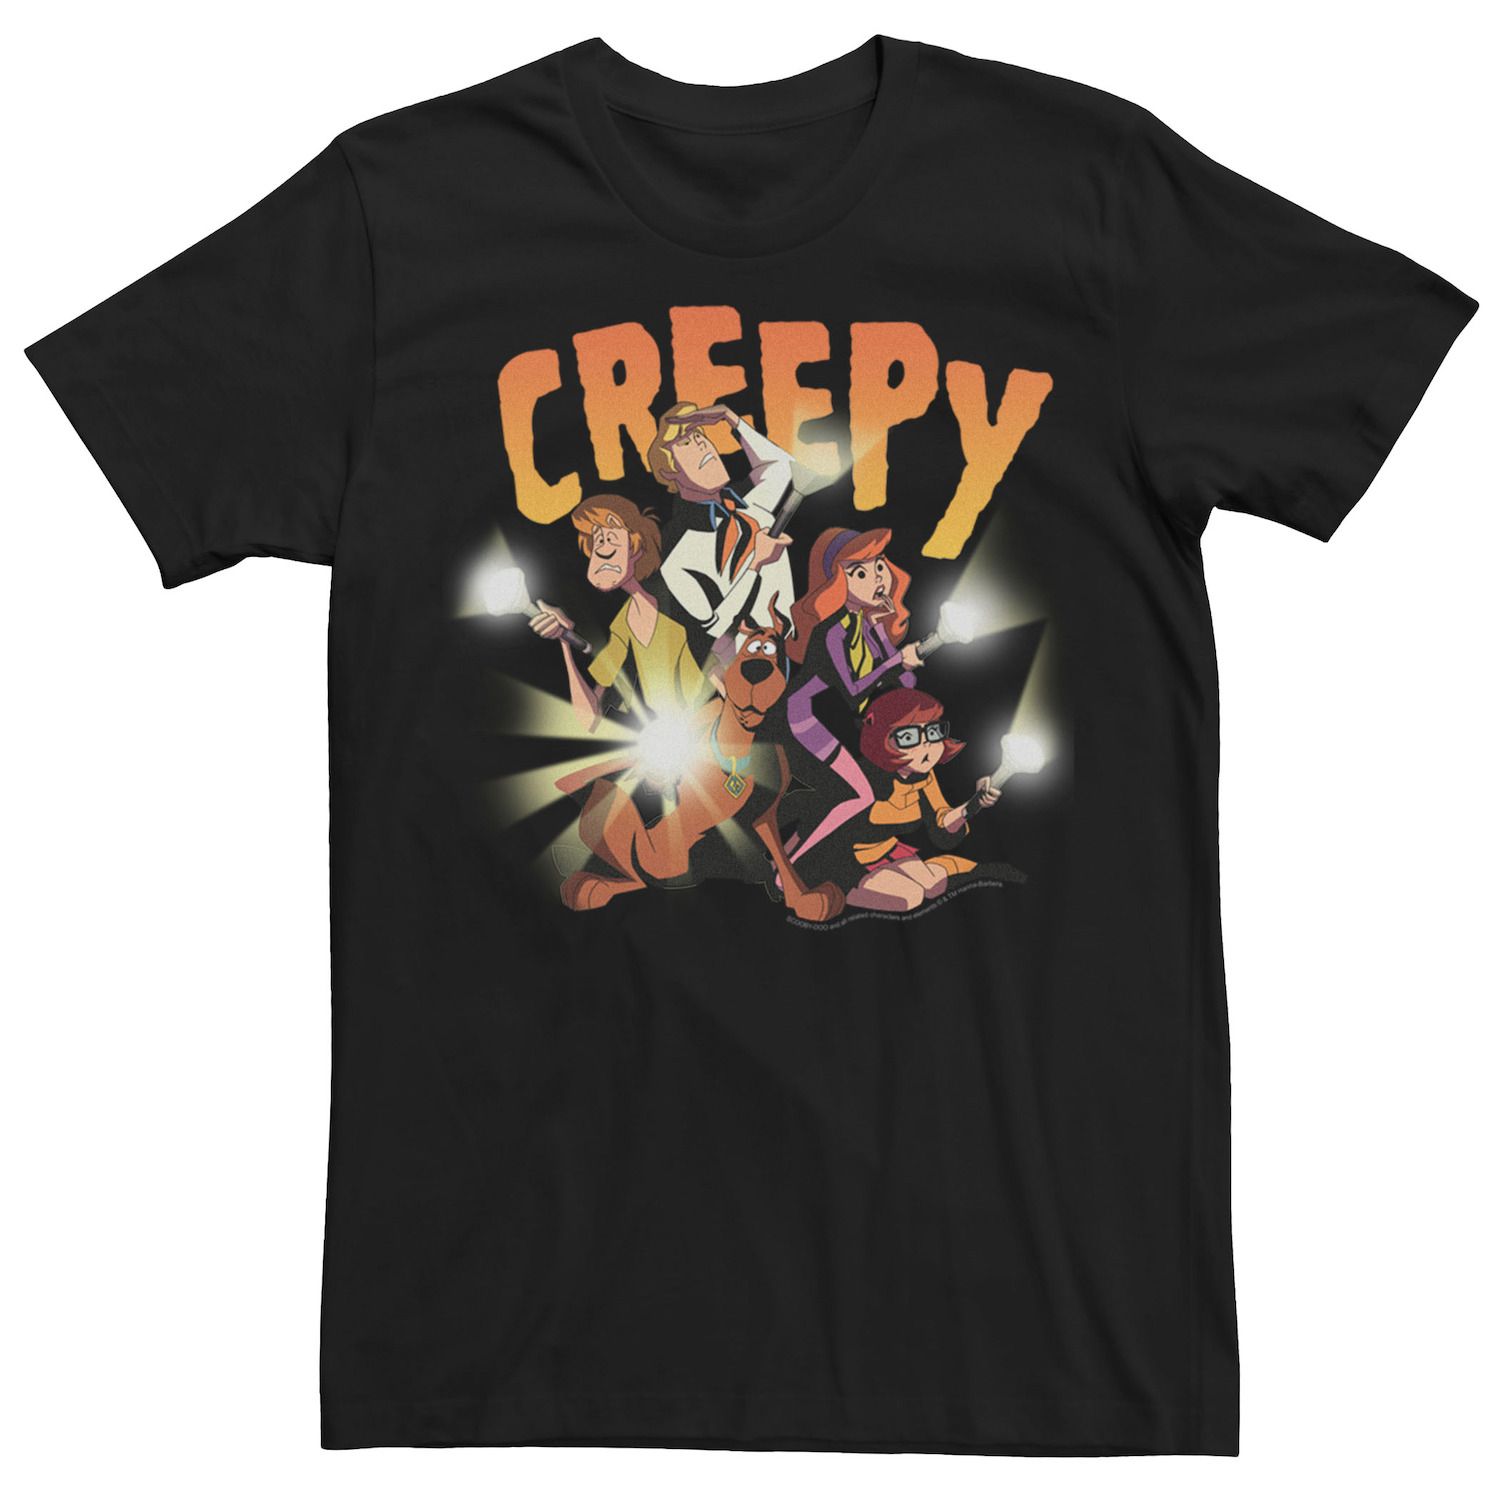 Мужская футболка с рисунком Scooby Doo Creepy Group Shot Licensed Character мужская футболка с короткими рукавами scooby doo creepy flashlight group fifth sun черный